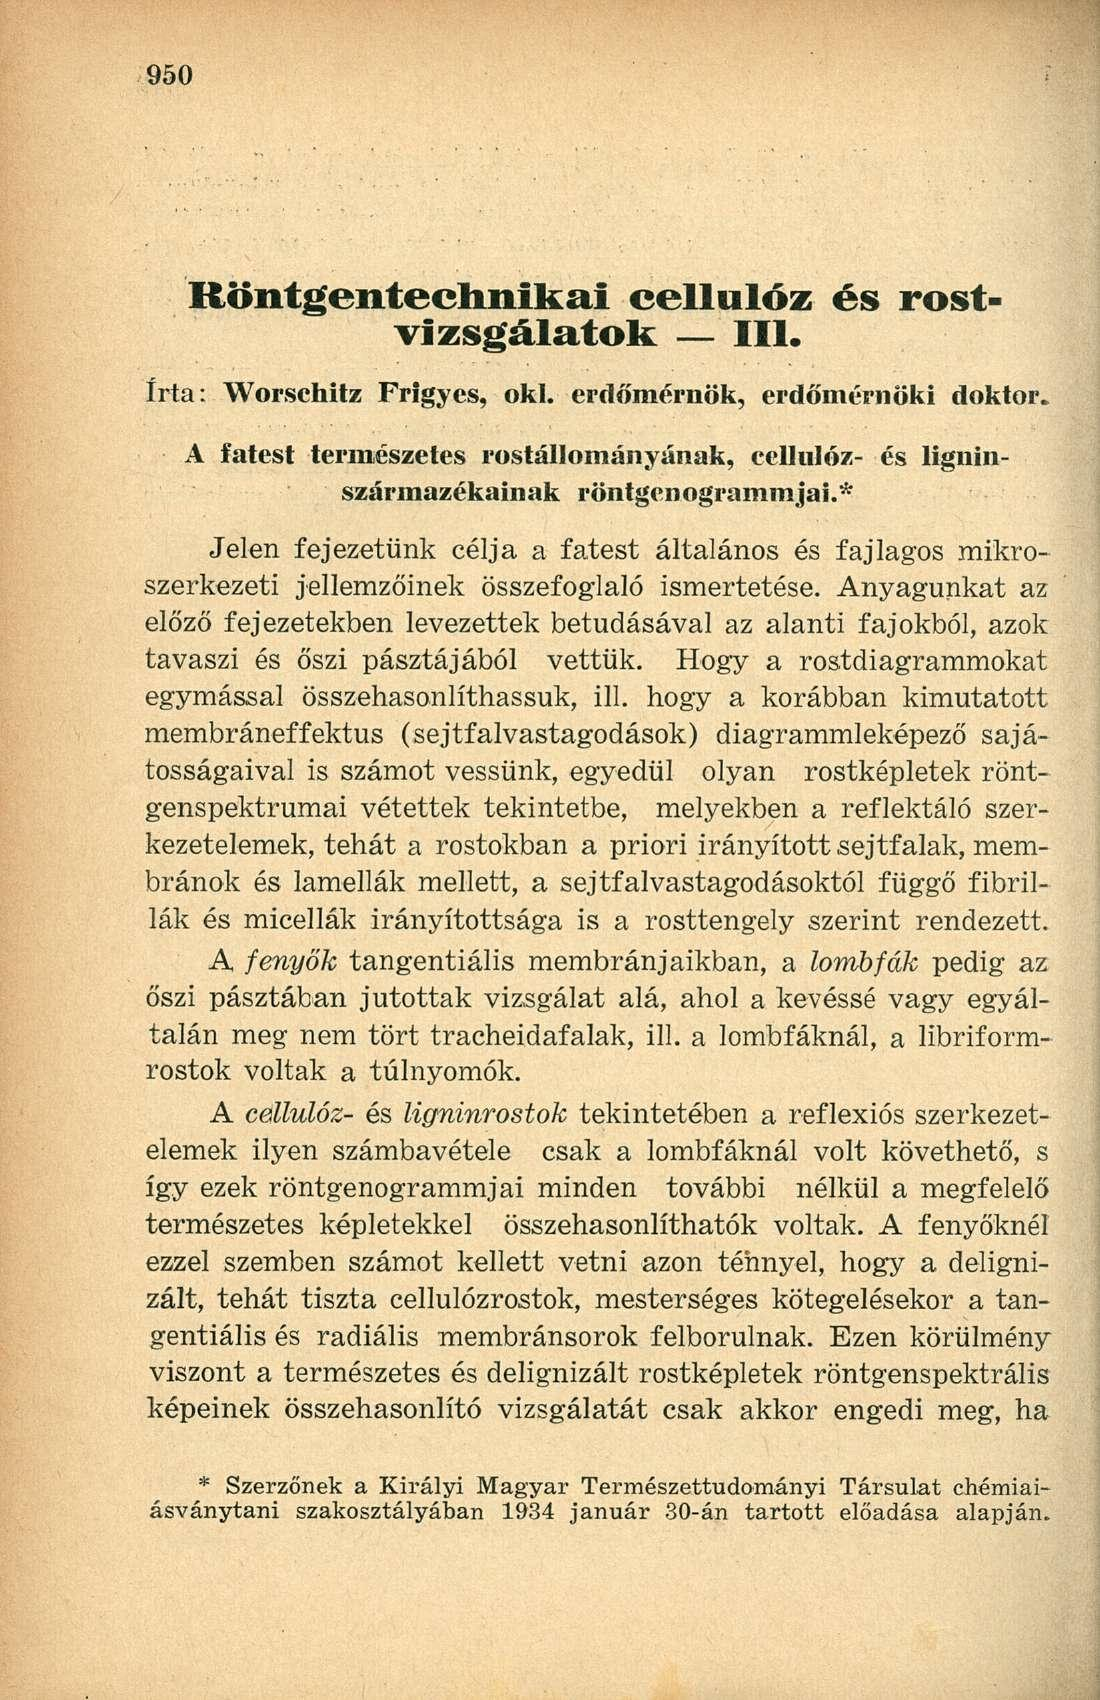 Röntgentechnikai cellulóz és rostvizsgálatok III. írta: Worschitz Frigyes, oki. erdőmérnök, erdőmérnöki doktor.